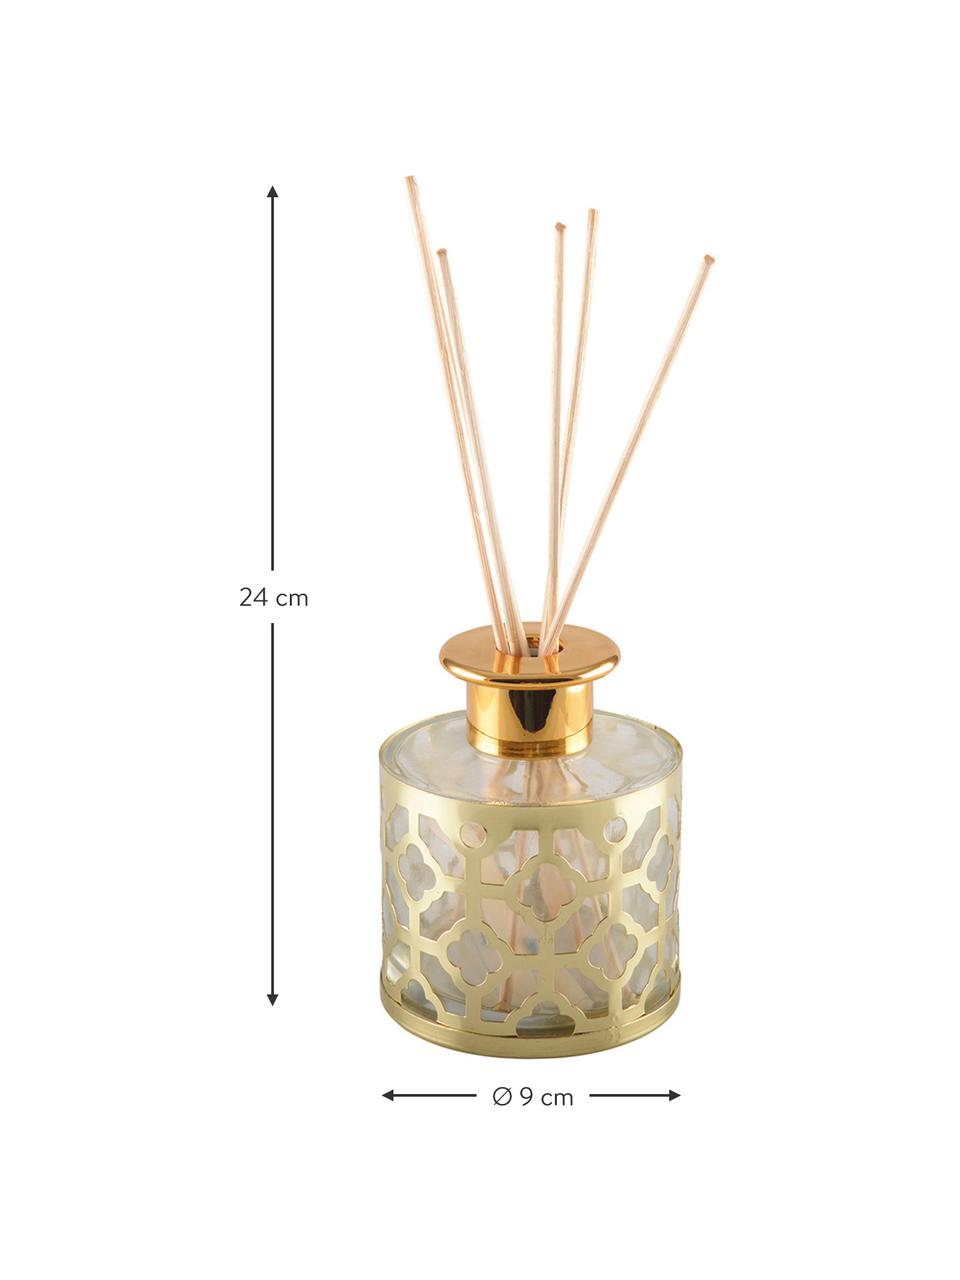 Diffuseur Helion (vanille), Métal, verre, huile parfumée, bâtonnets en bois, Couleur dorée, transparent, Ø 9 x haut. 24 cm